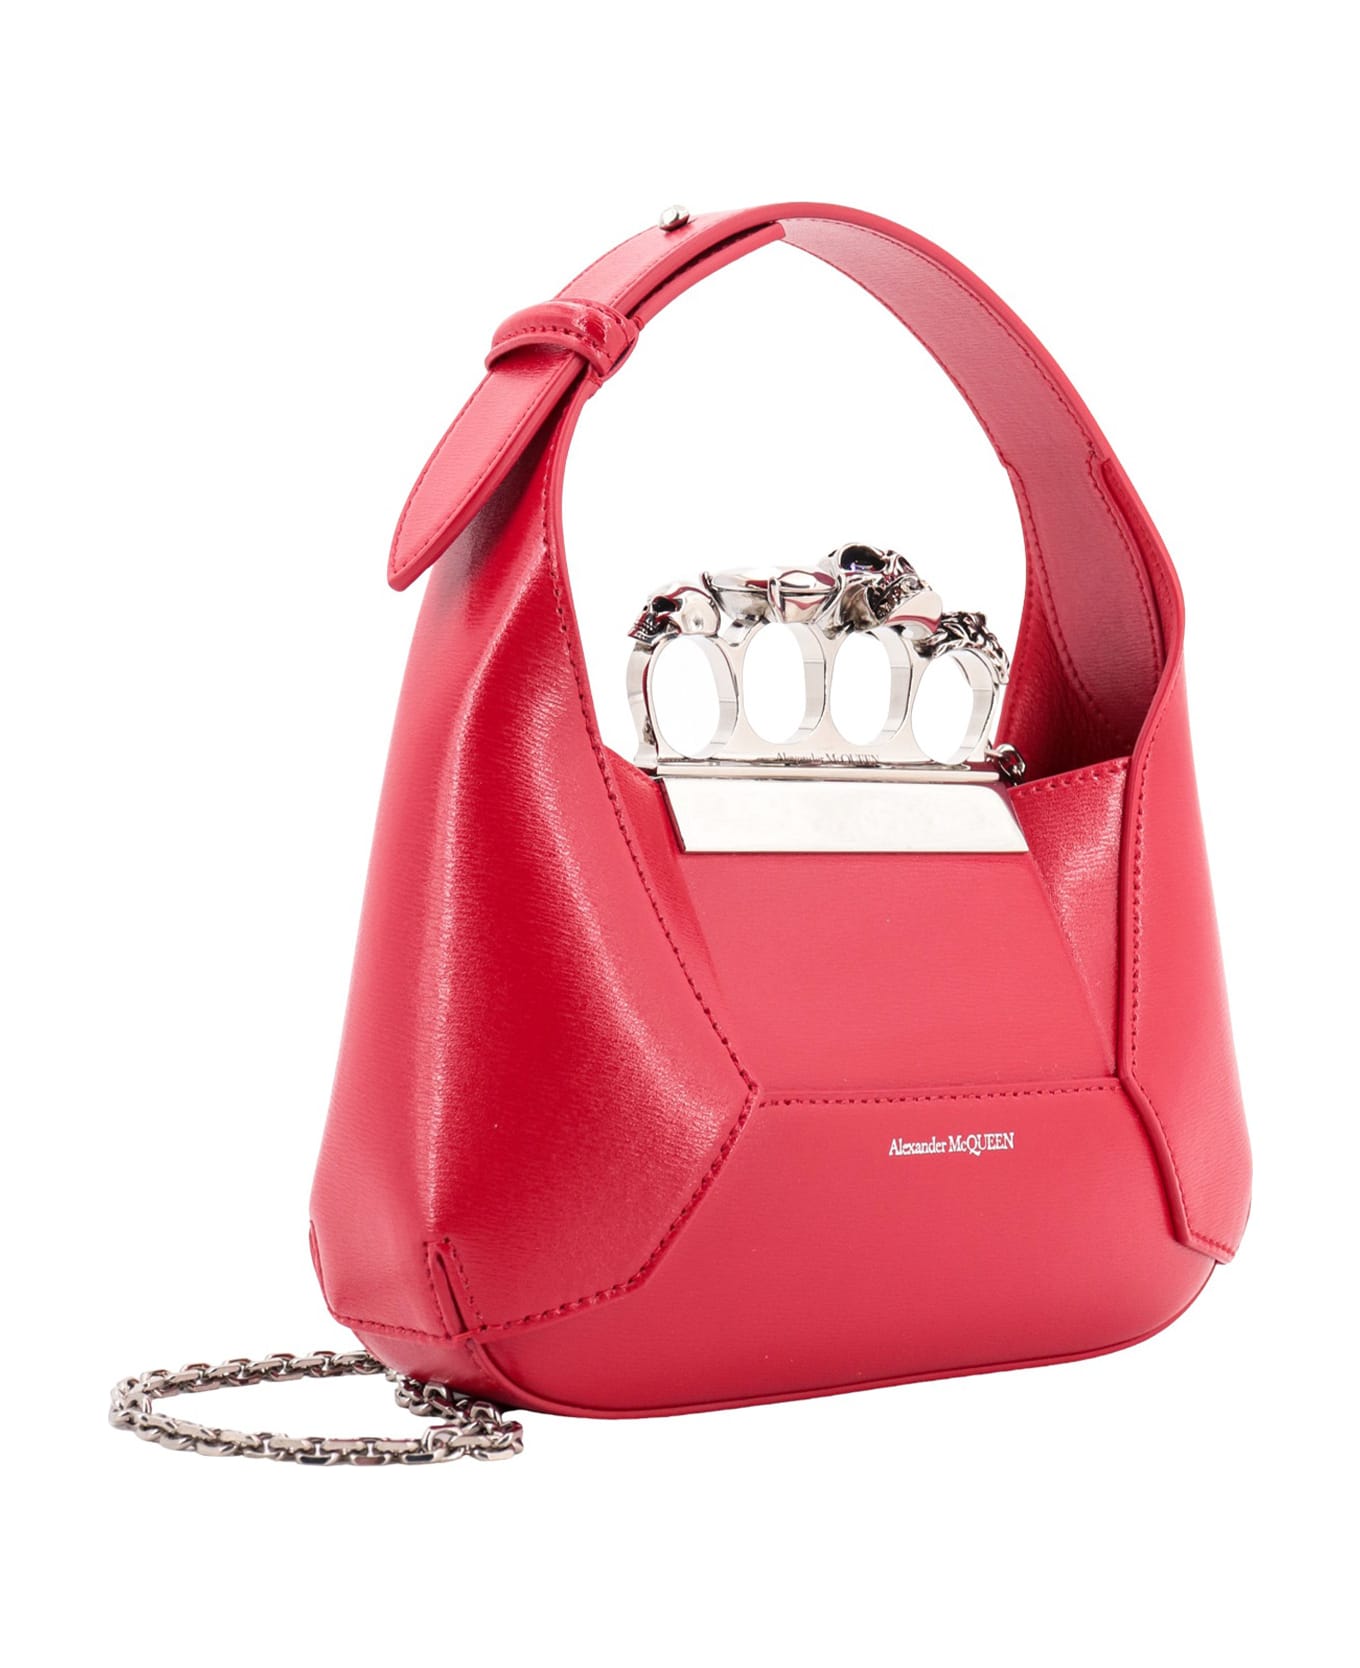 Alexander McQueen Jewelled Handbag - Red